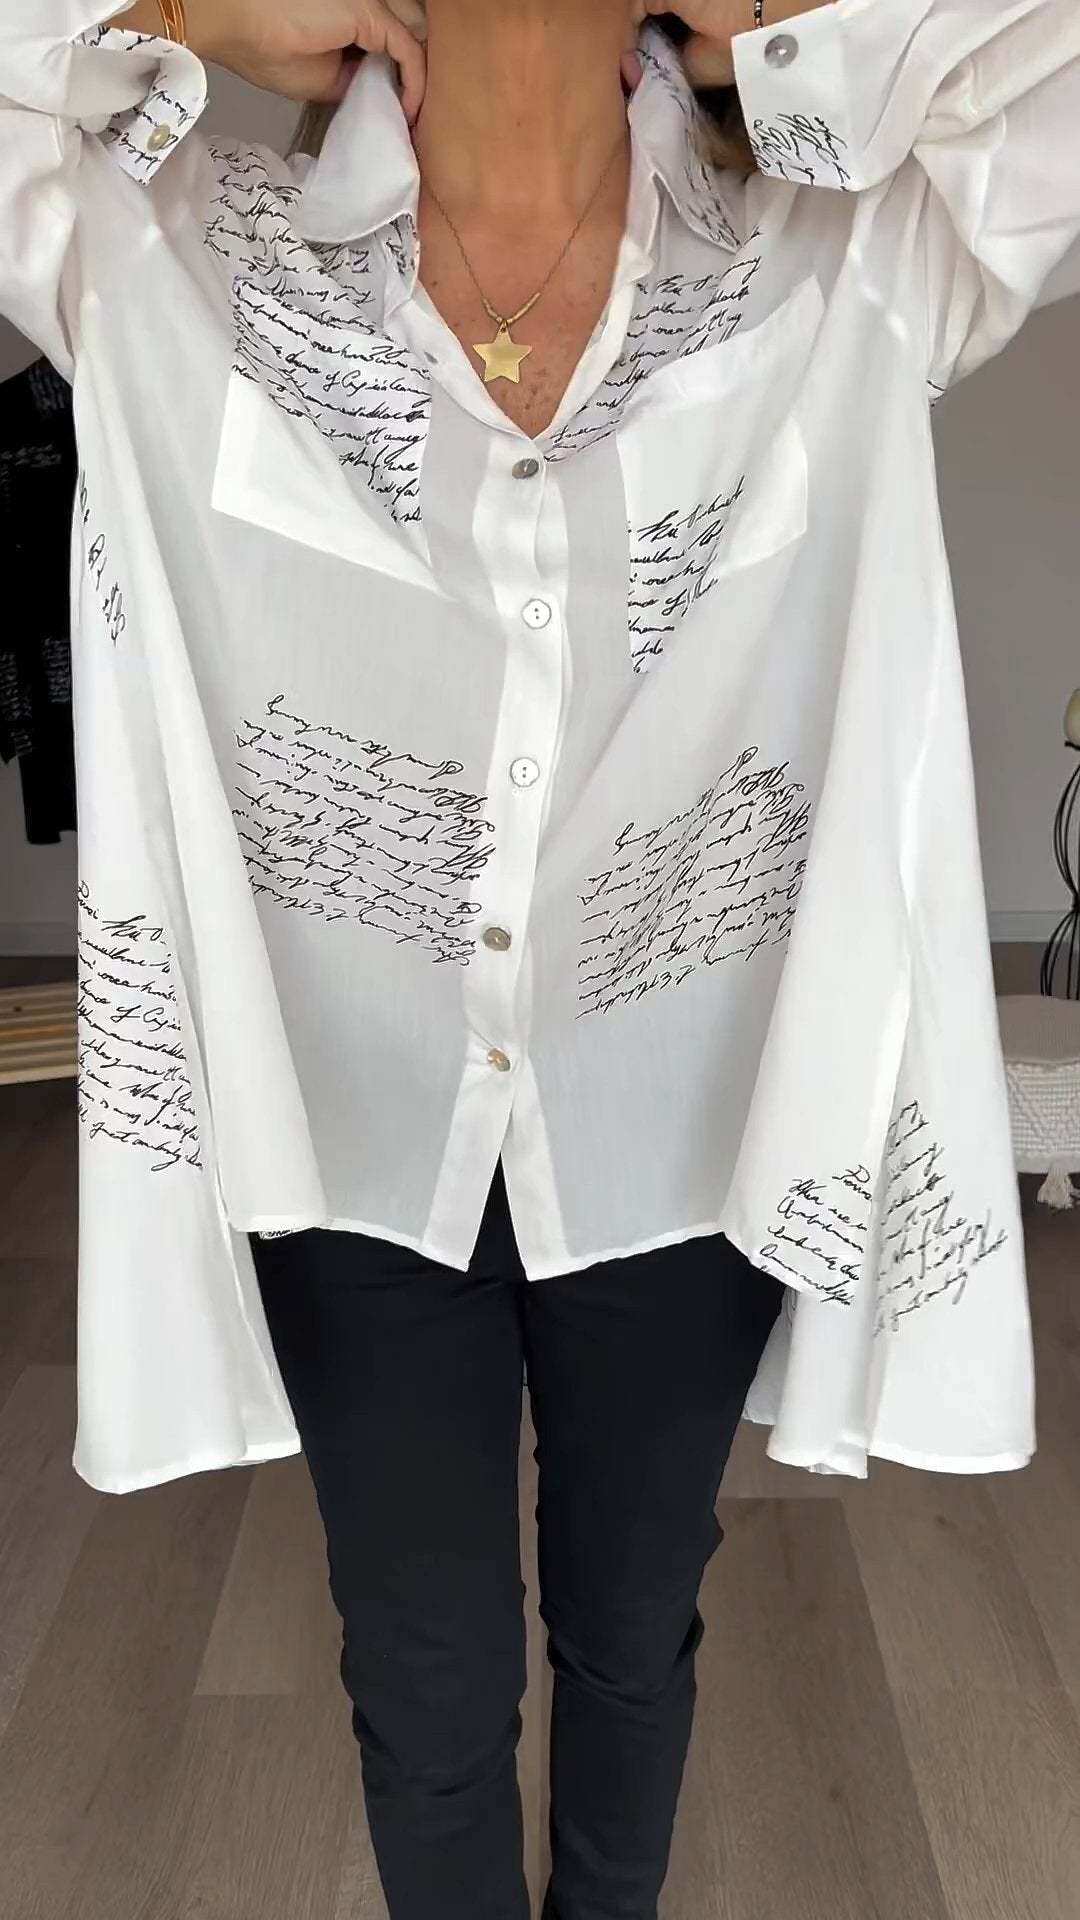 Modna koszula z klapami i nadrukiem w litery